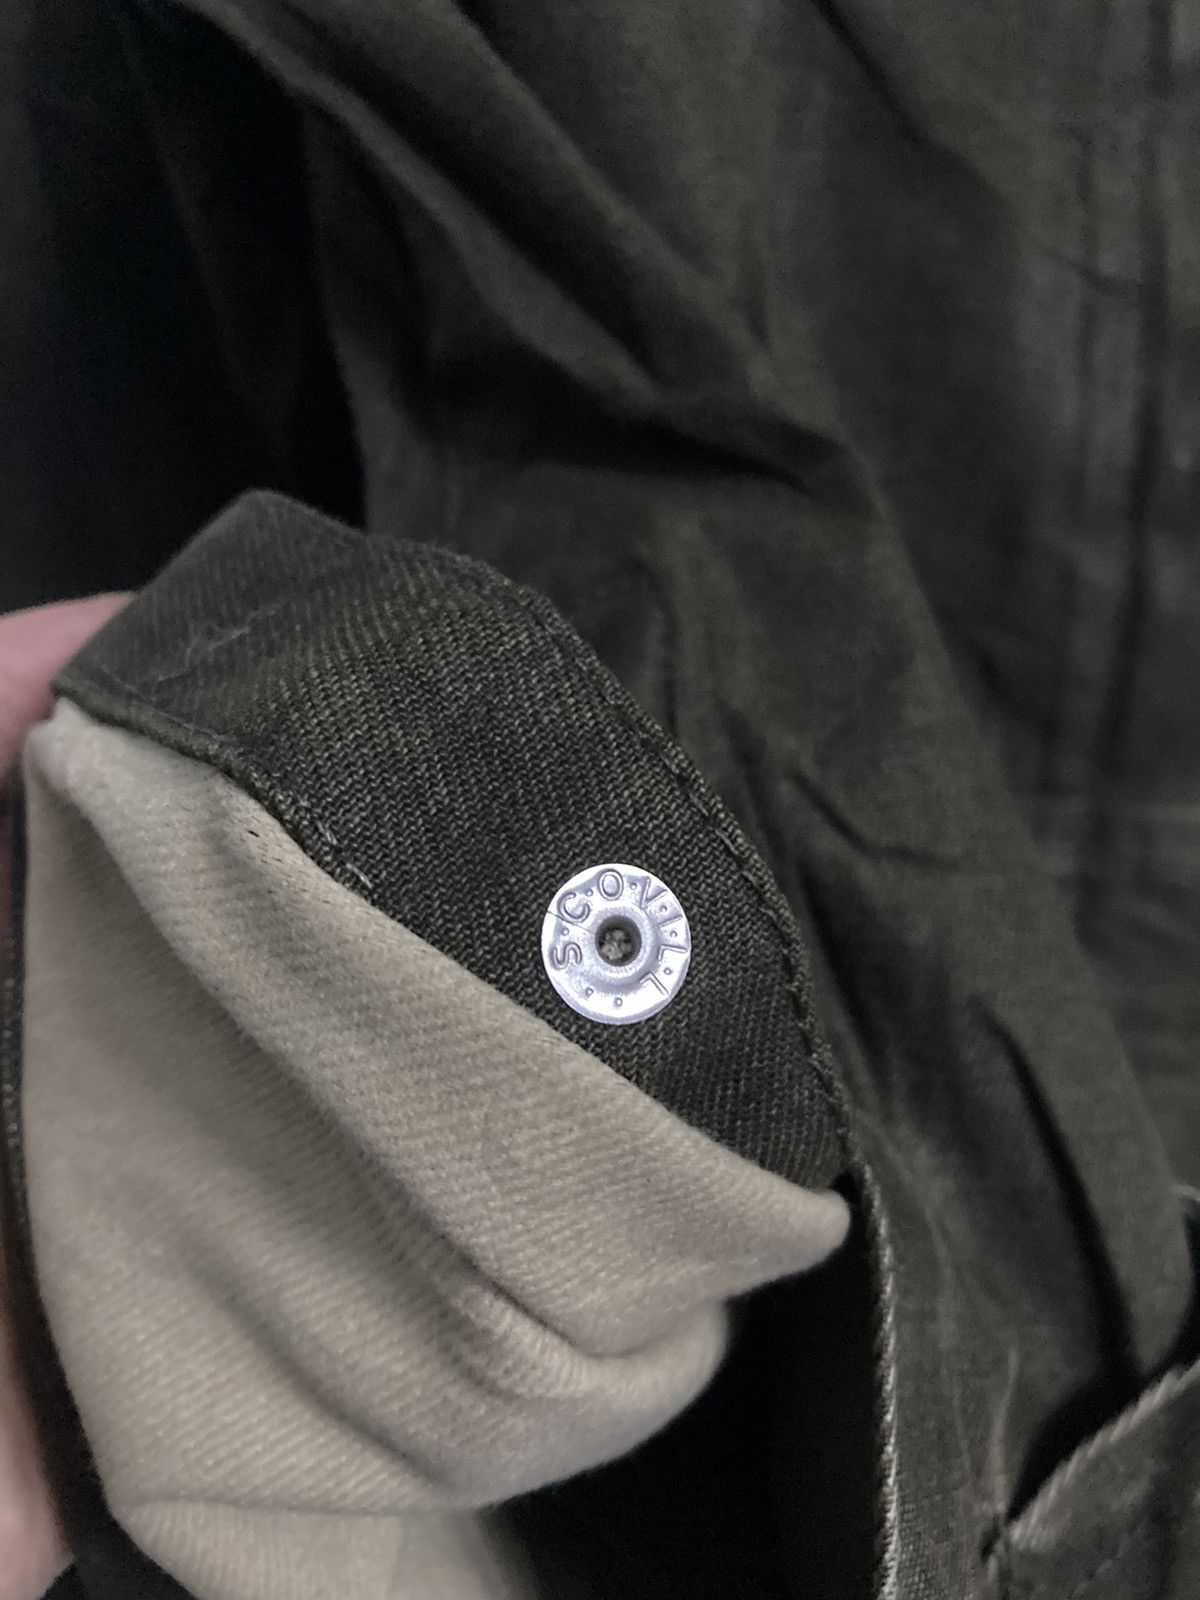 Burberrys Blue Label Hooded Jacket in Size 38 - 11